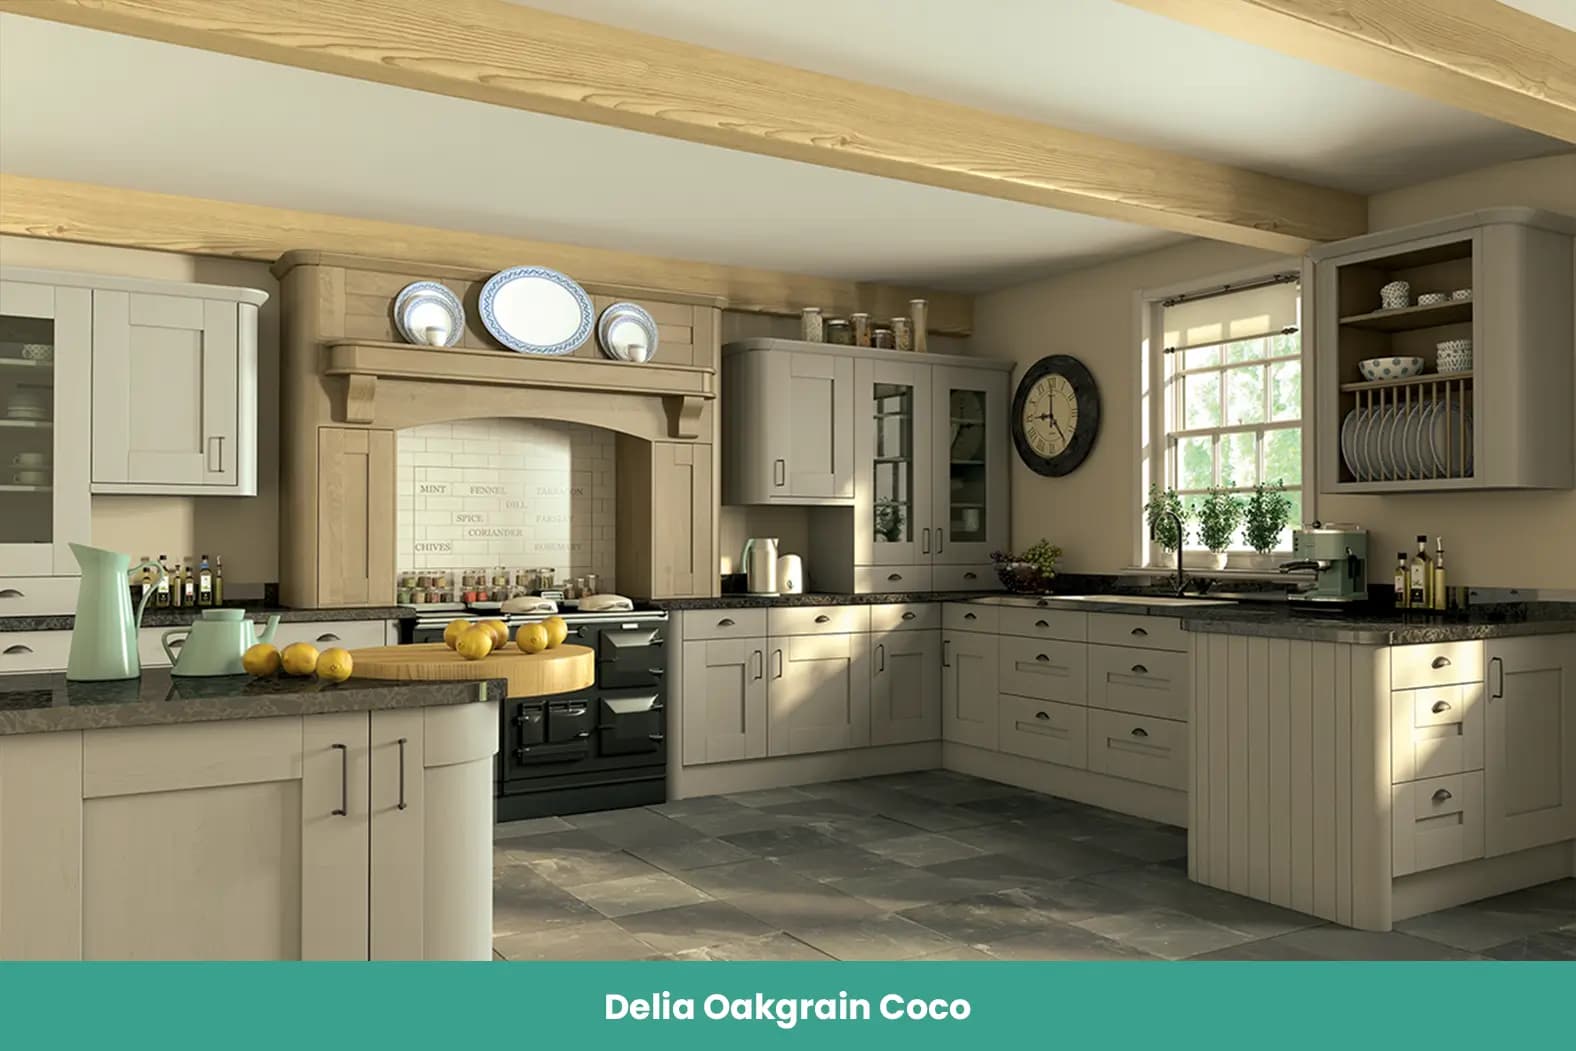 Delia Oakgrain Coco Kitchen